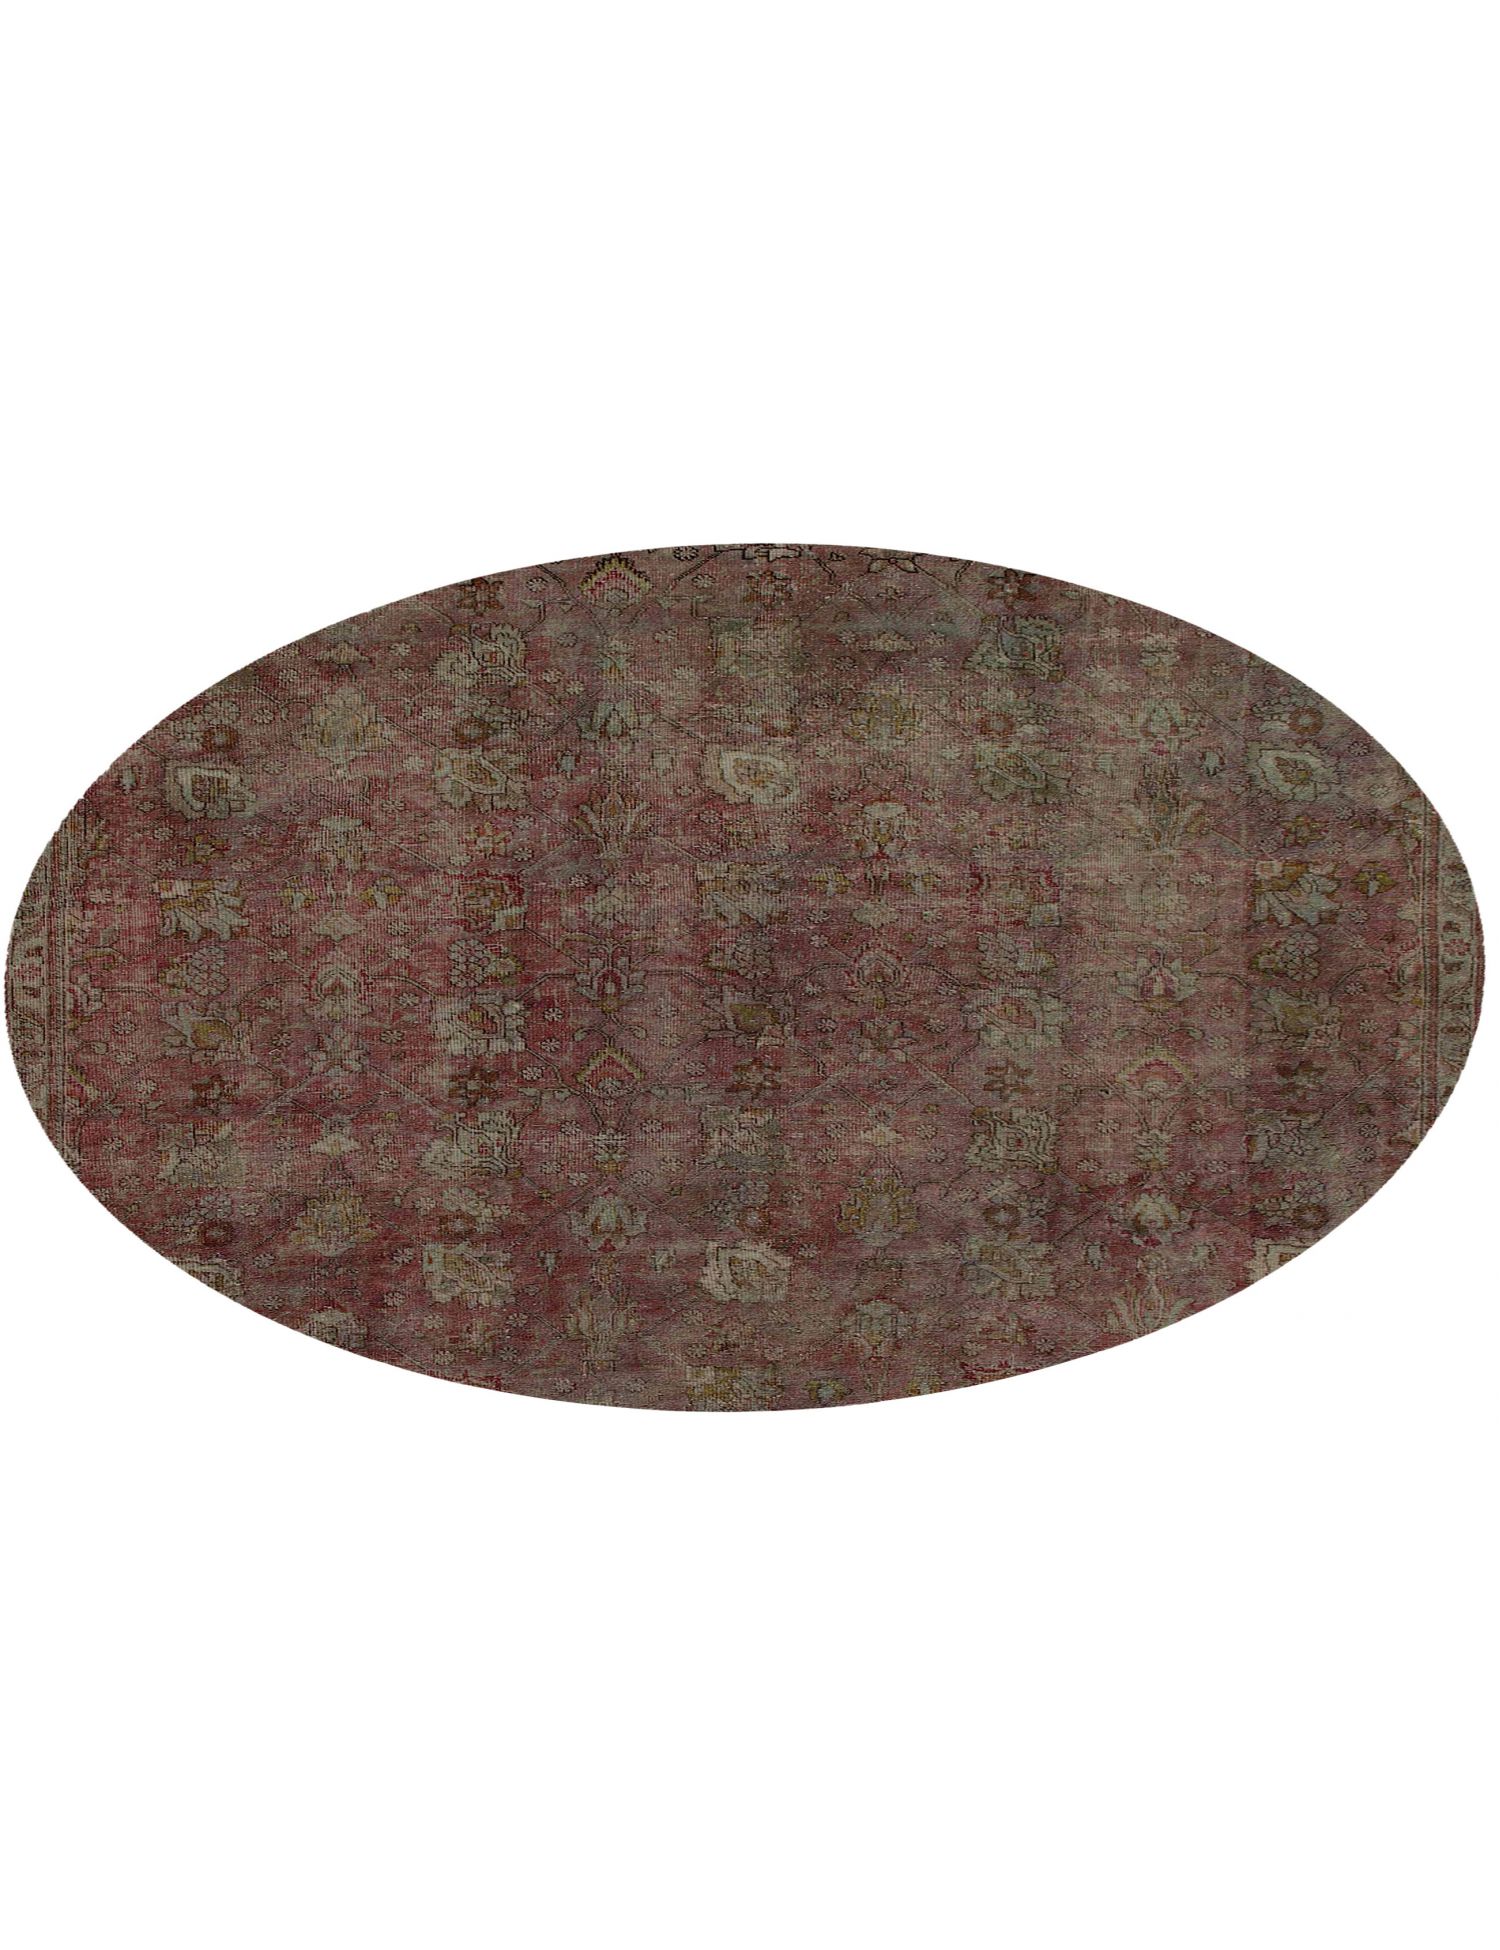 Rund  Vintage Teppich  grün <br/>227 x 227 cm